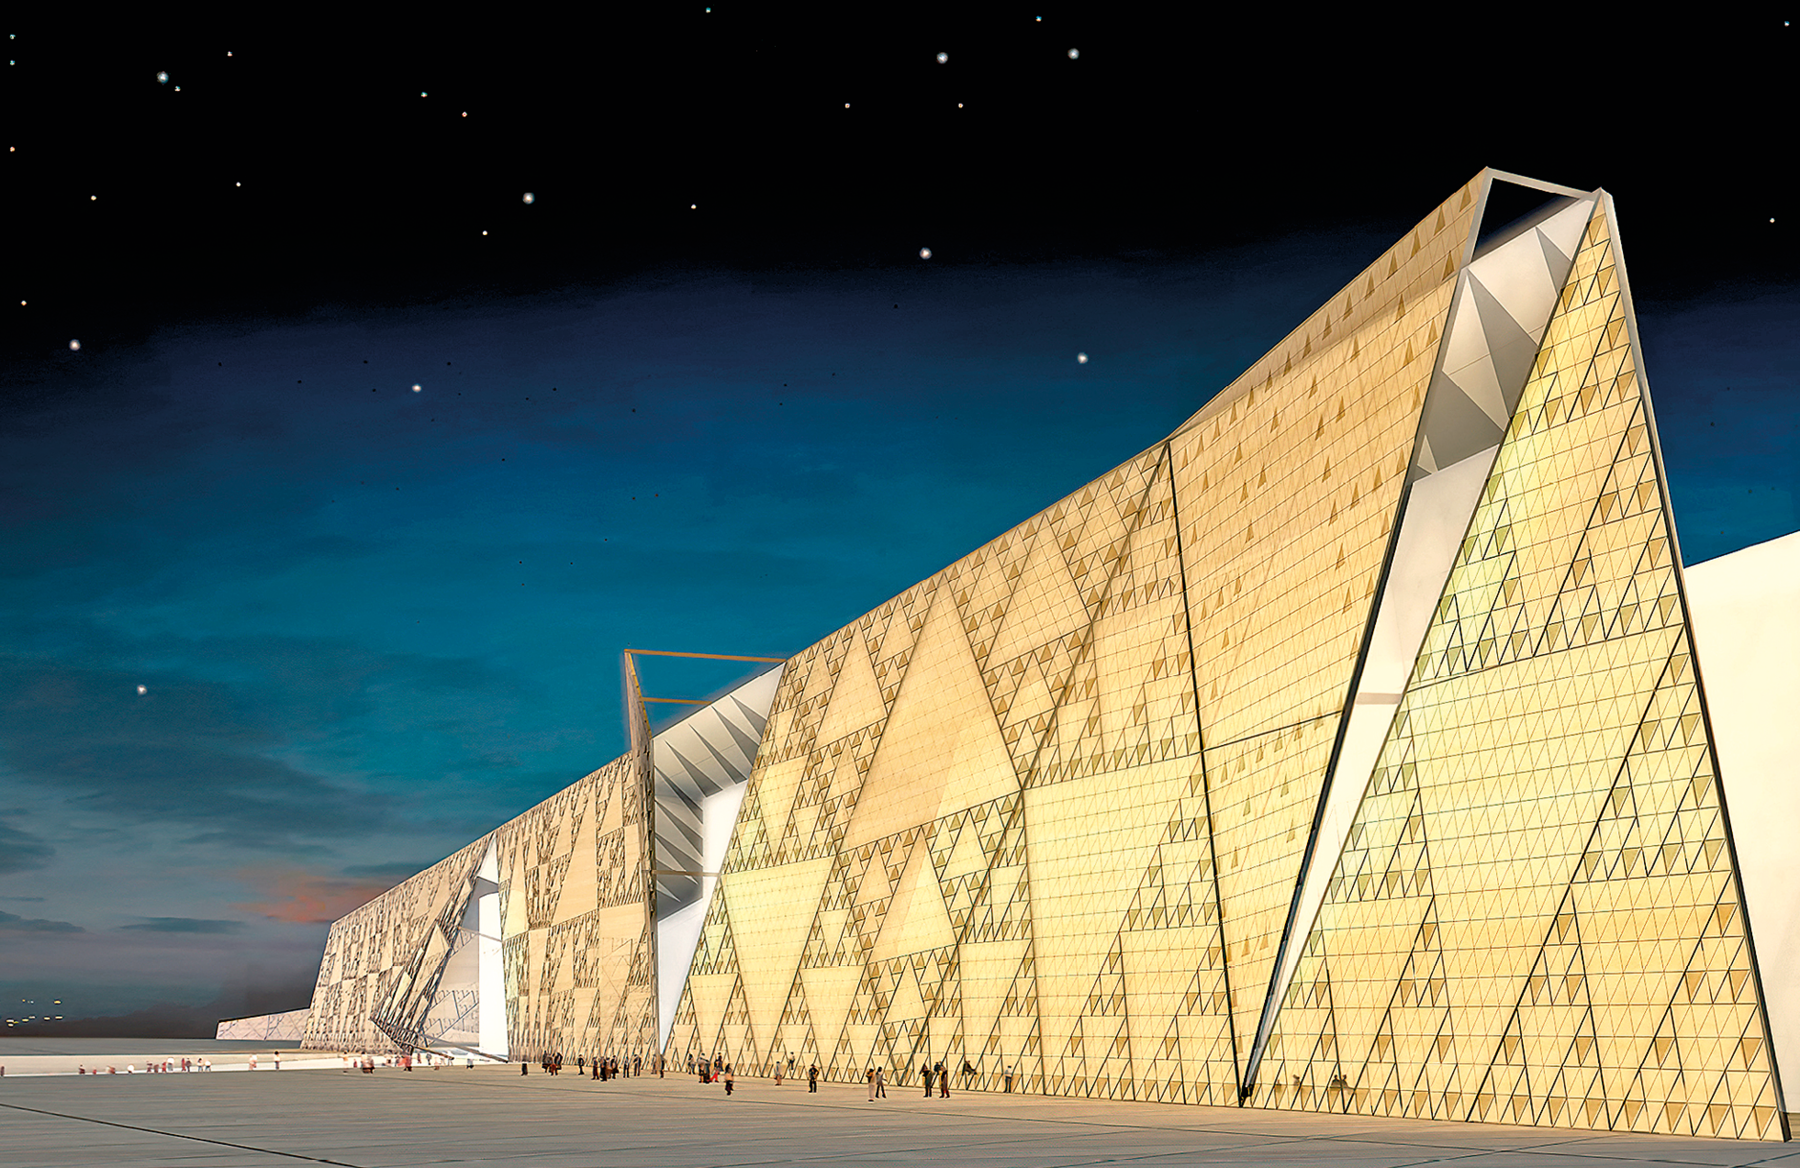 Fotografia. Representação gráfica da fachada de um museu em formato de triângulos grandes amarelos com outros menores dentro.